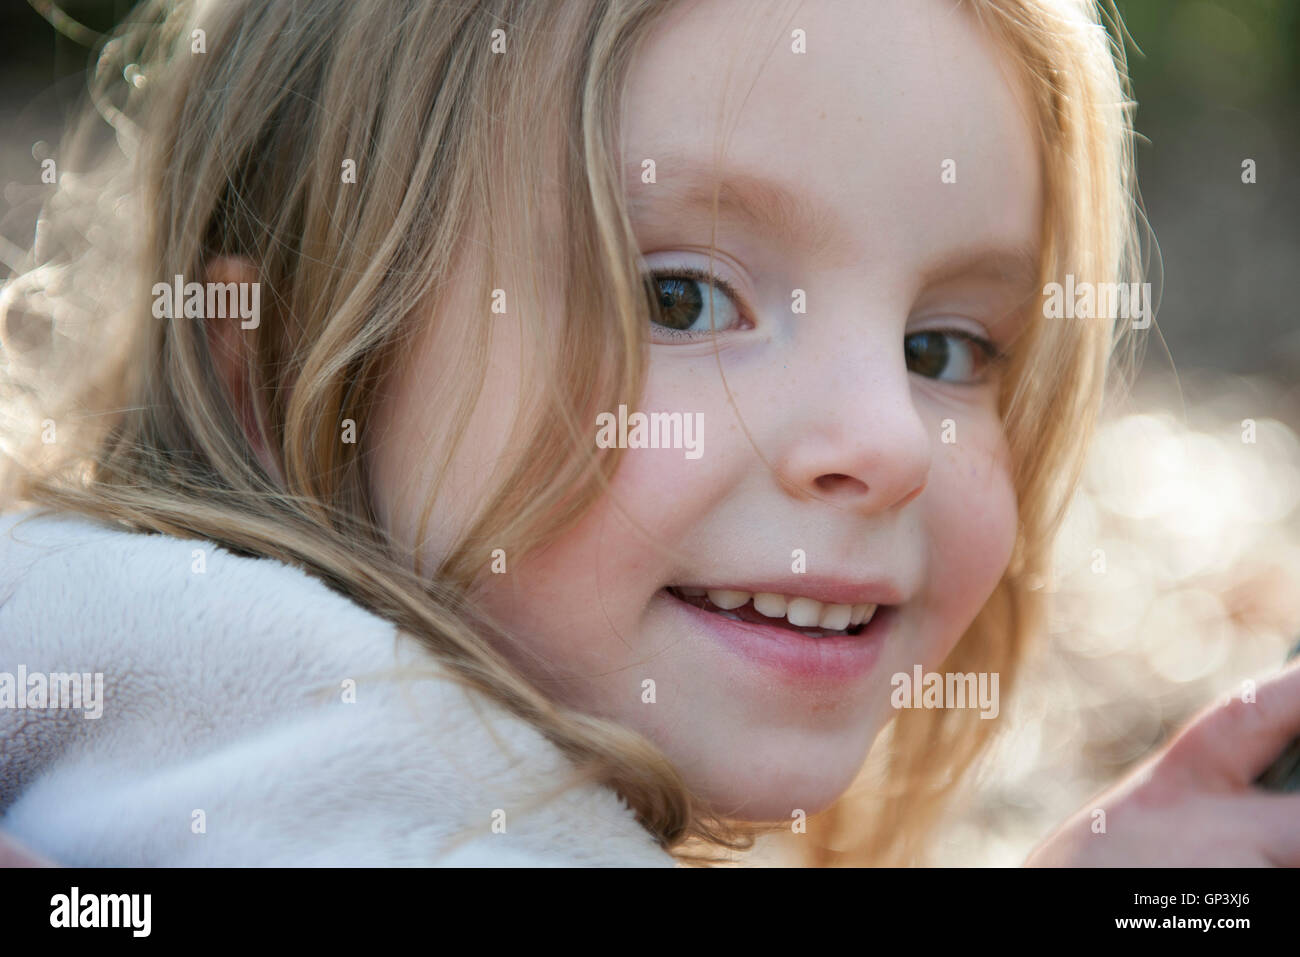 Little girl smiling, portrait Banque D'Images